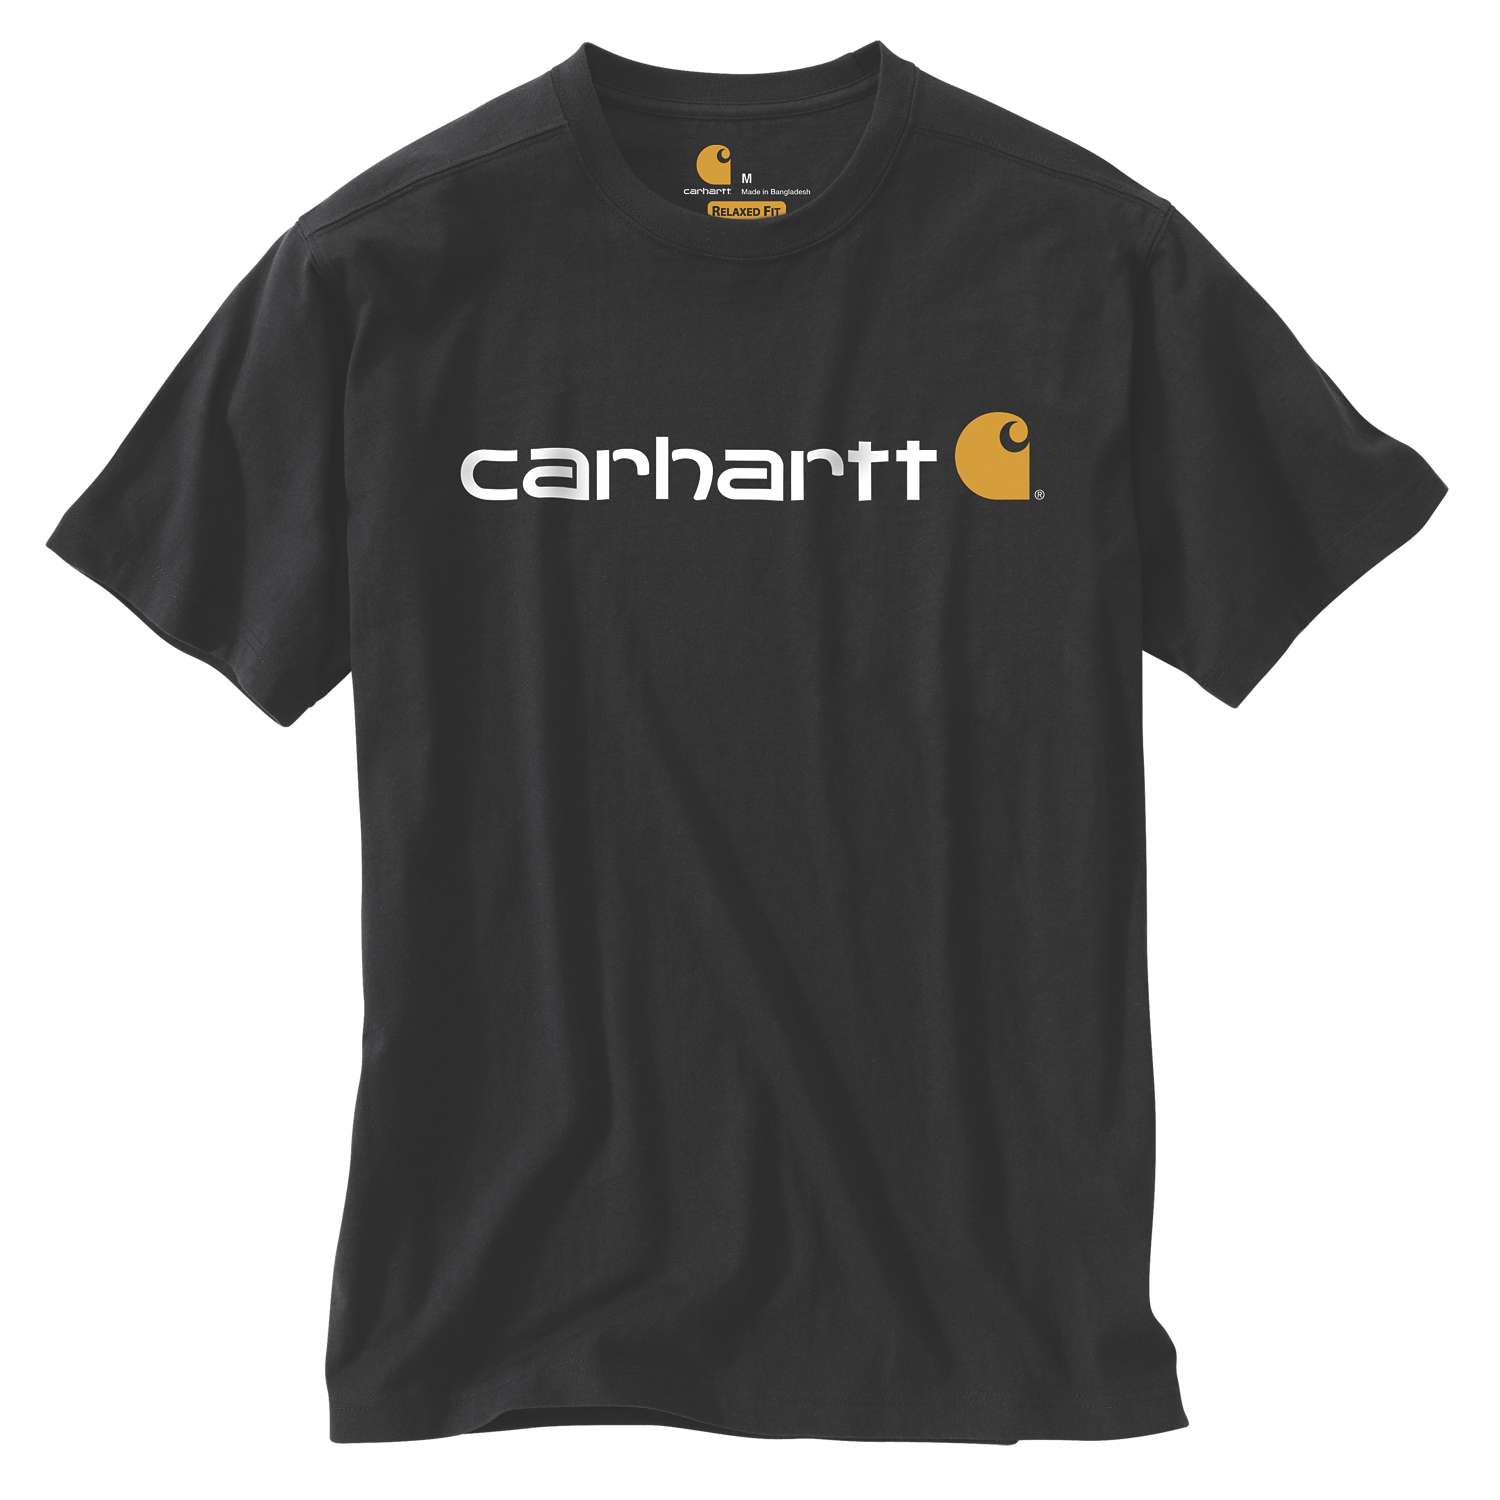 Herren-T-Shirt Relaxed Fit, Carhartt-Logo